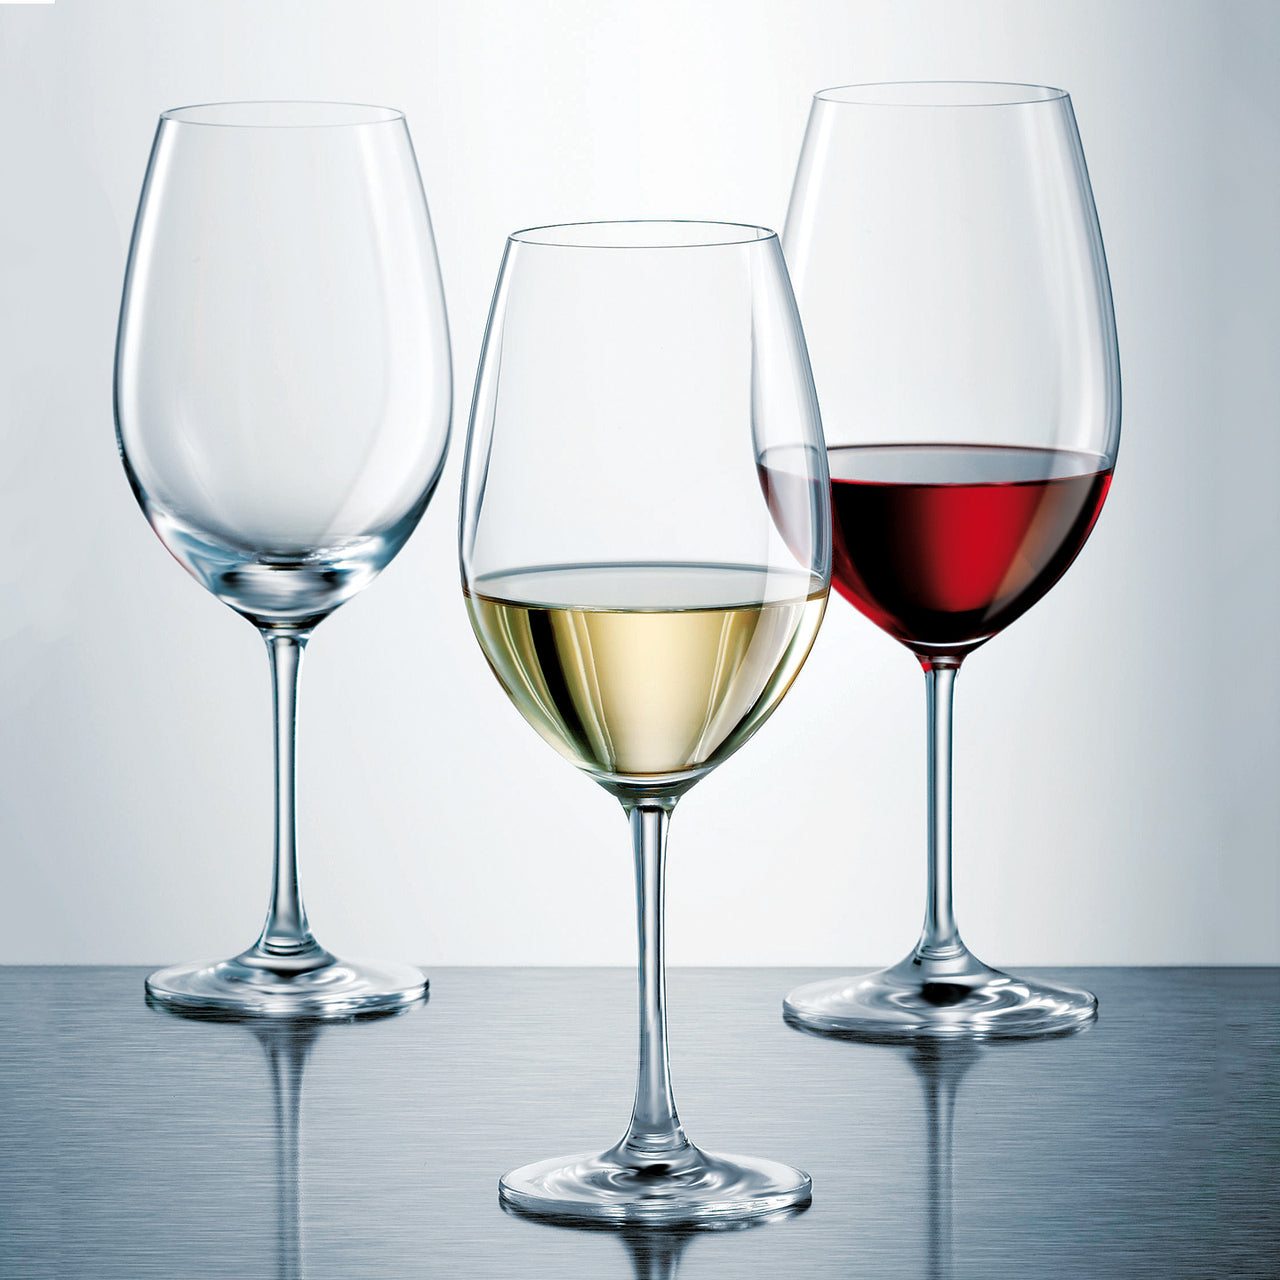 Zwiesel Ivento Tritan Bordeaux Wine Glass / Set of 6